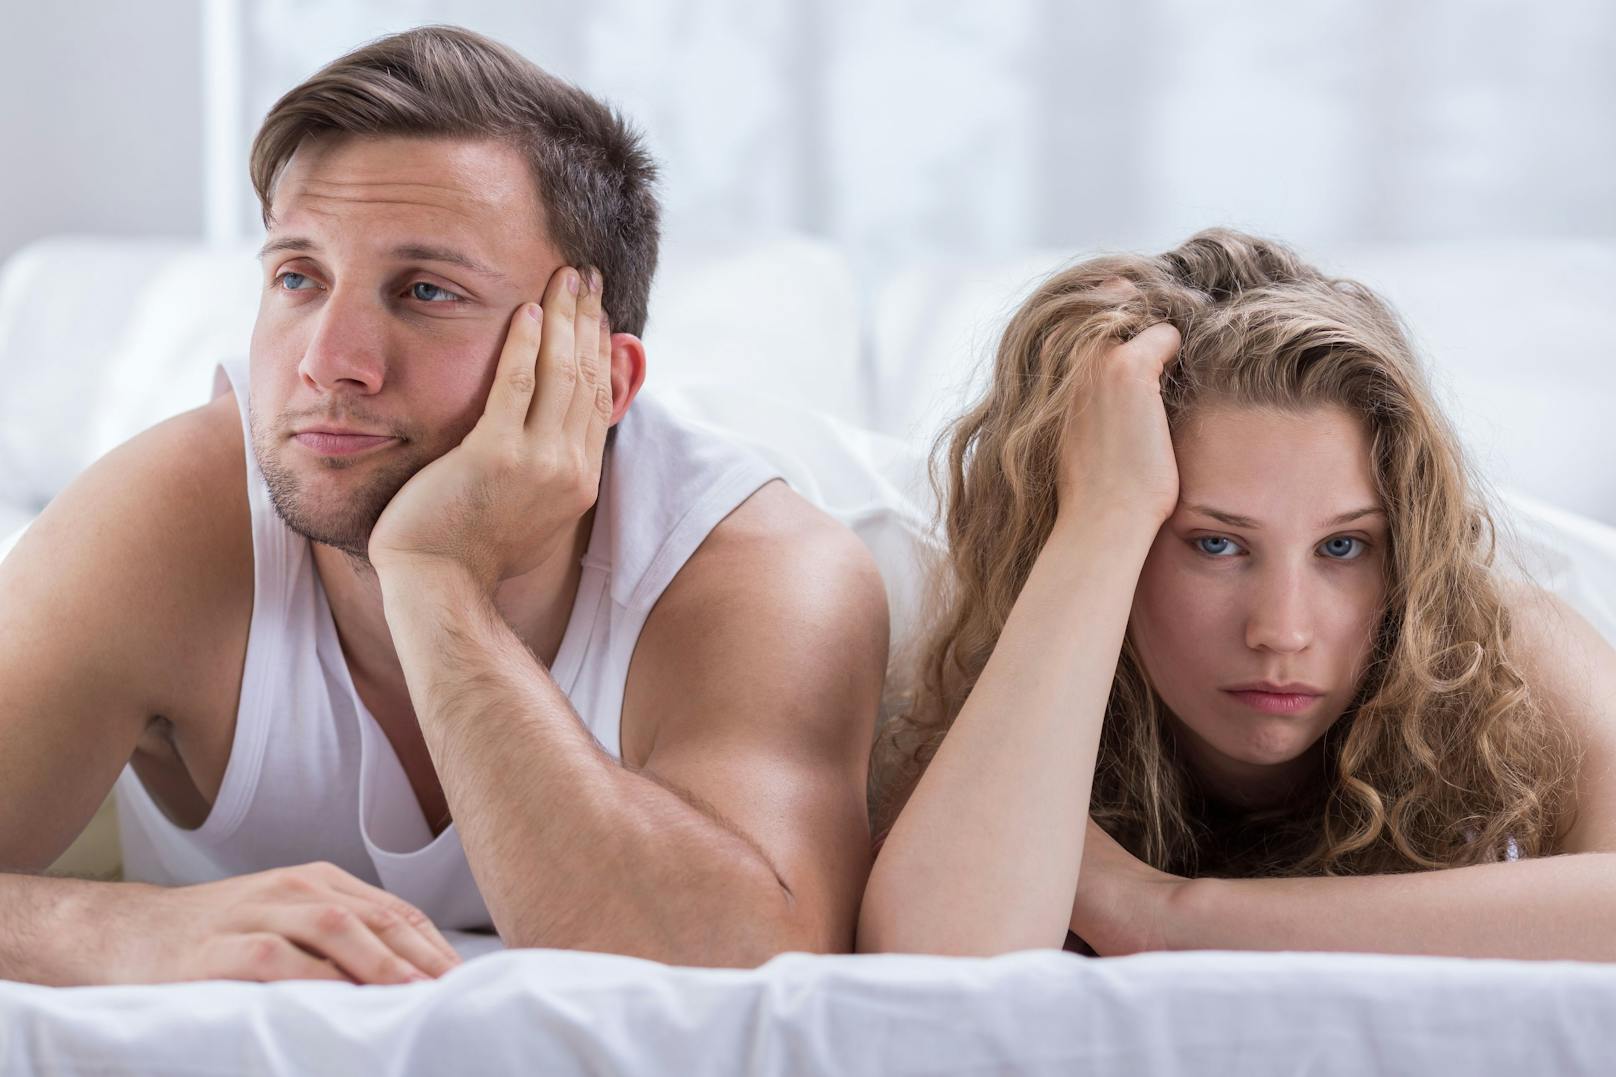 Ein hoher Porno-Konsum kann sich negativ auf das Sexleben auswirken.